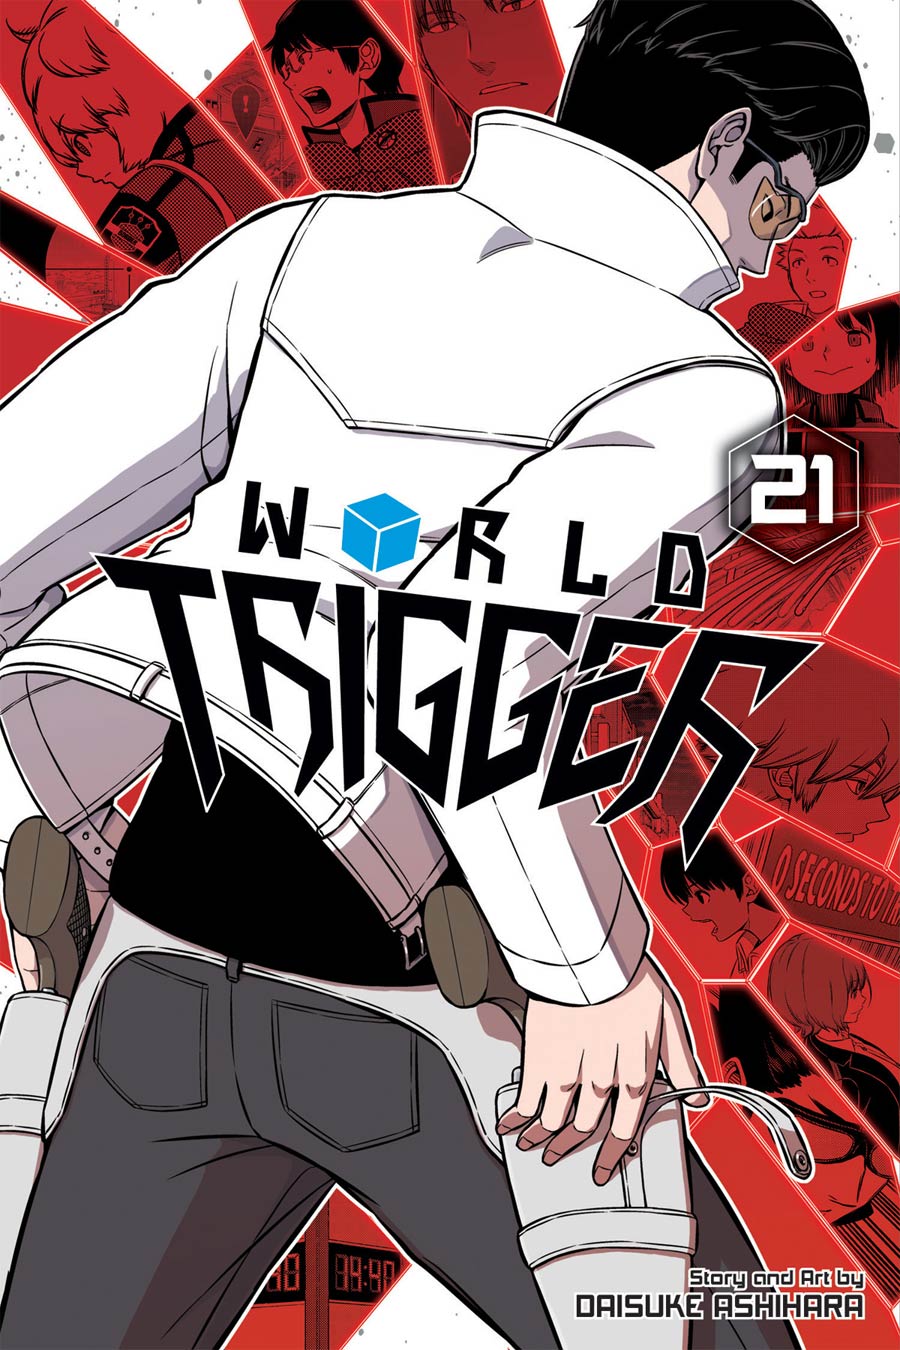 World Trigger Vol 21 TP